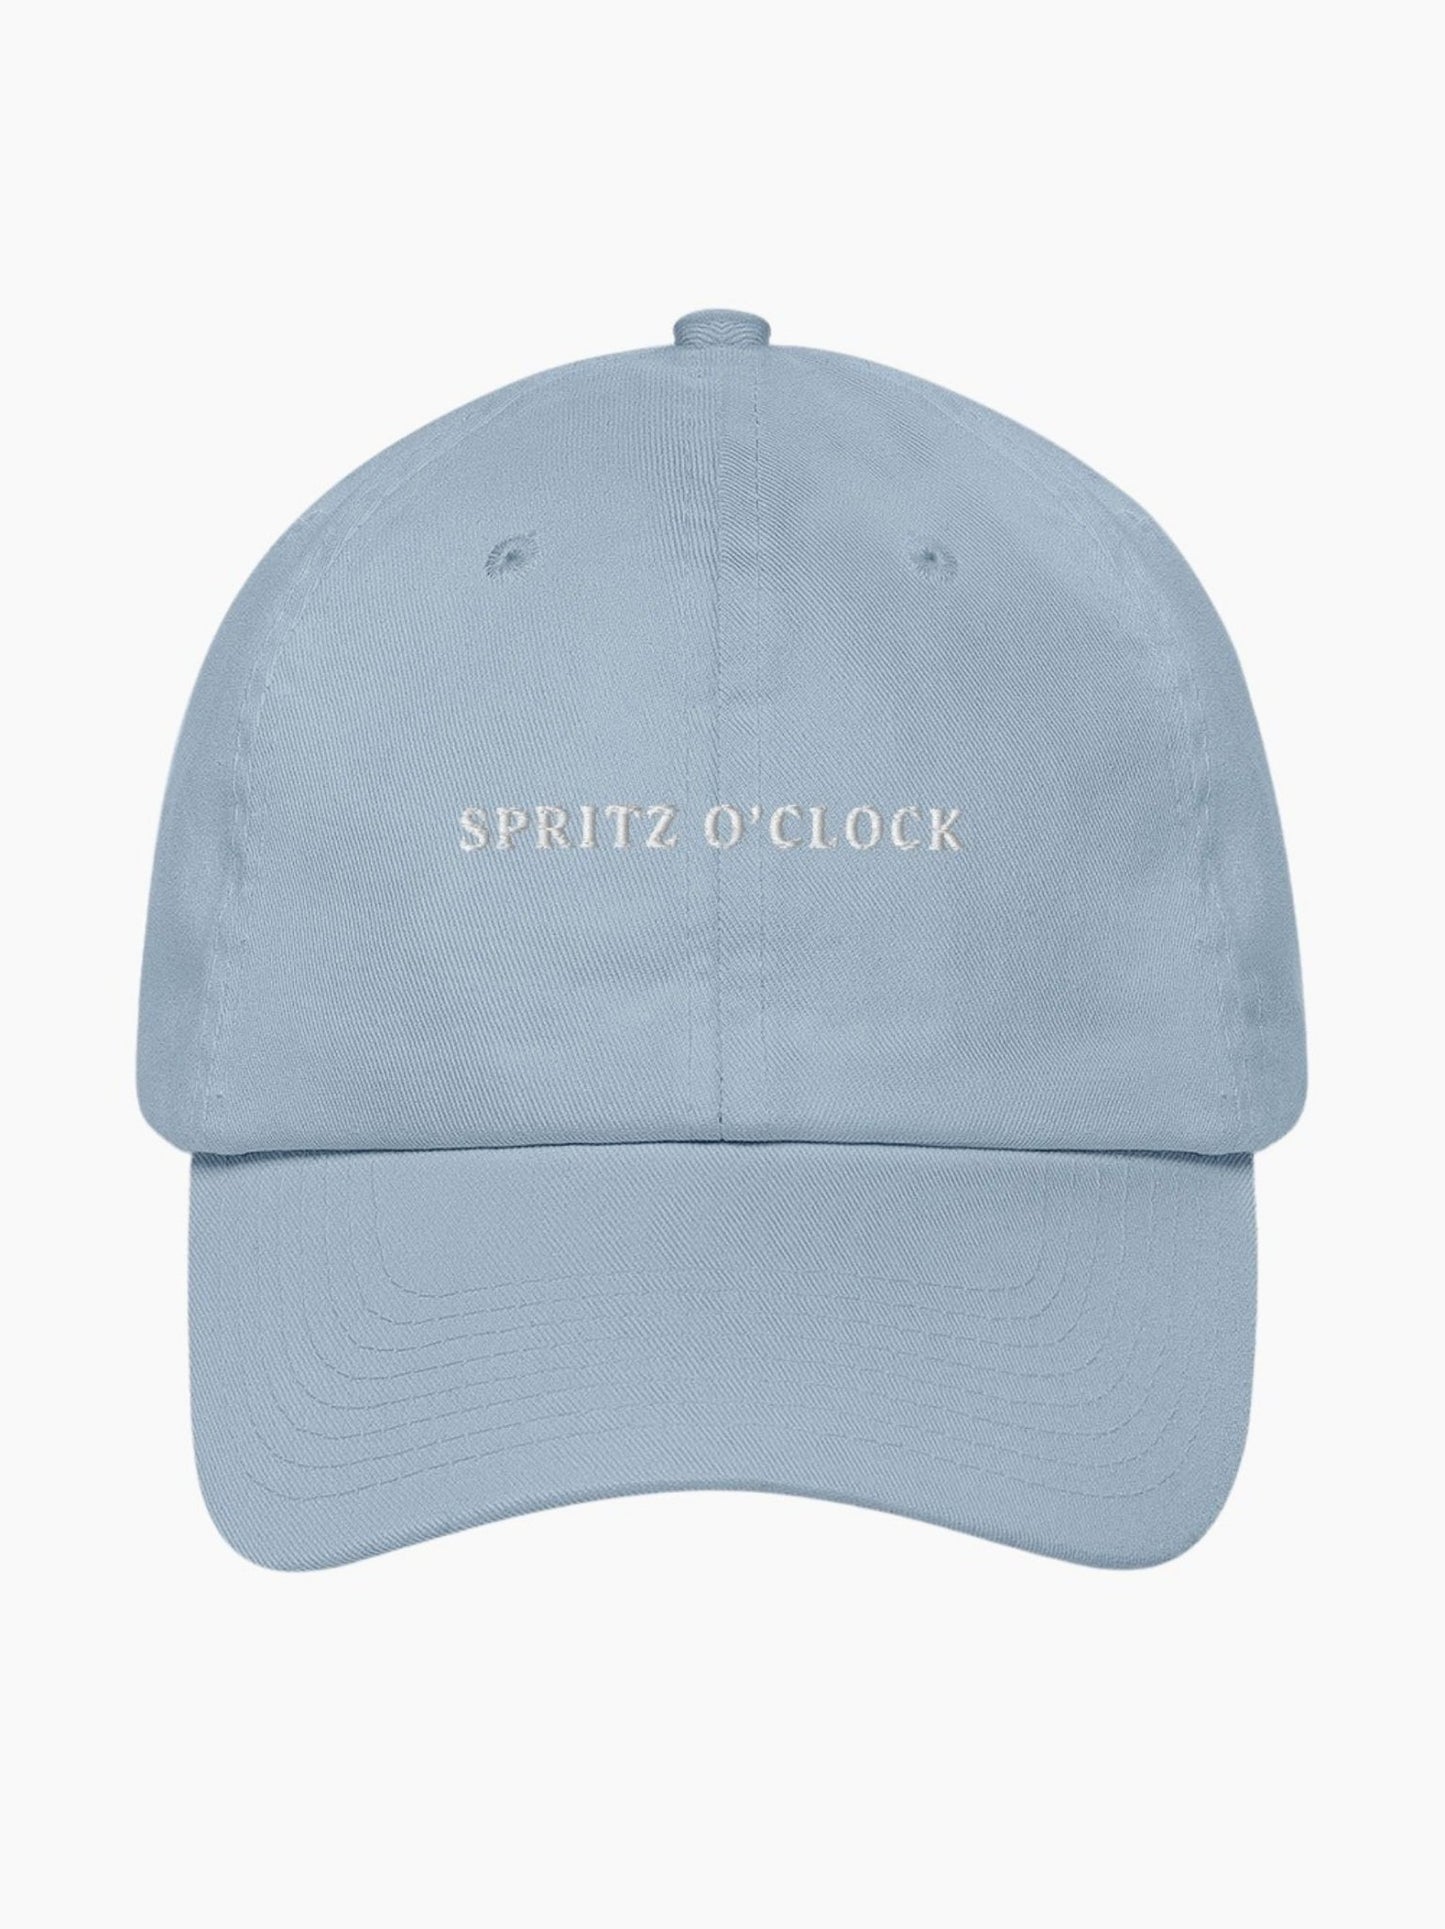 Spritz O'clock Cap